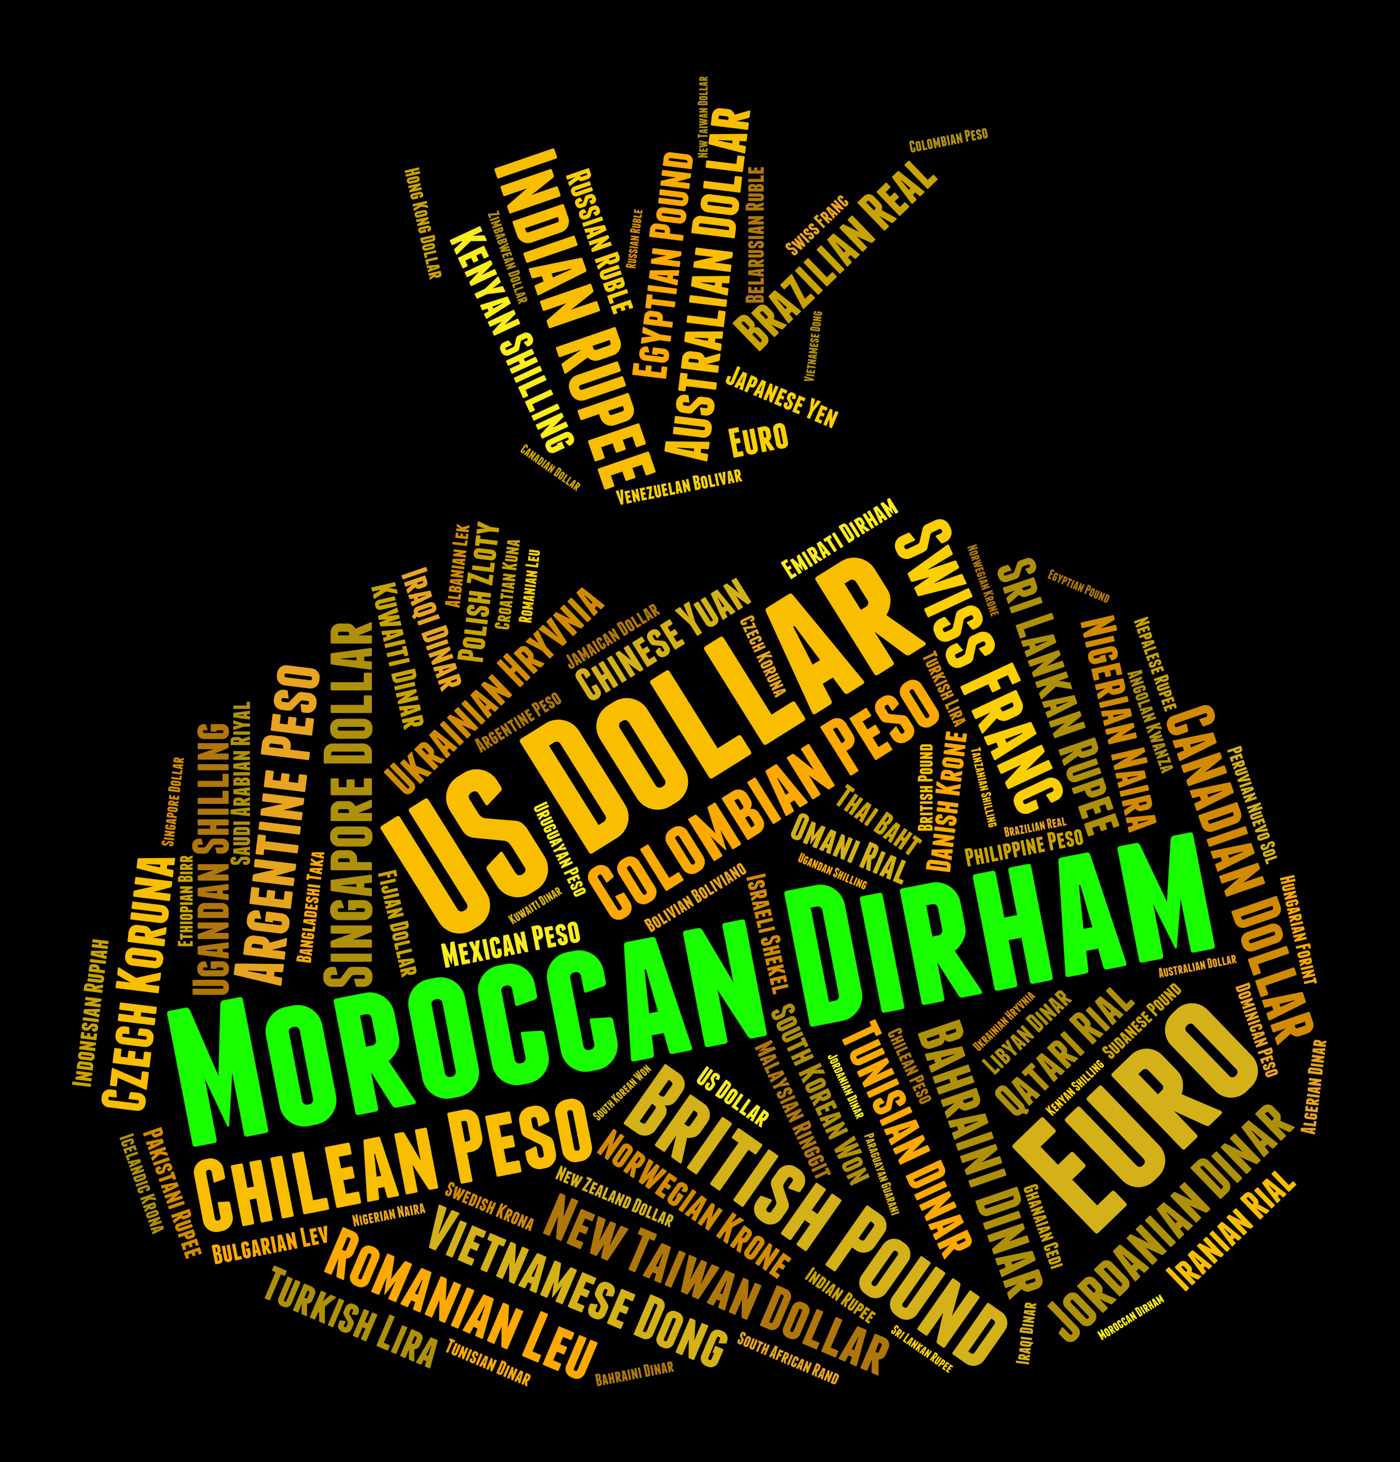 Moroccan dirham shows morocco dirhams and currencies photo